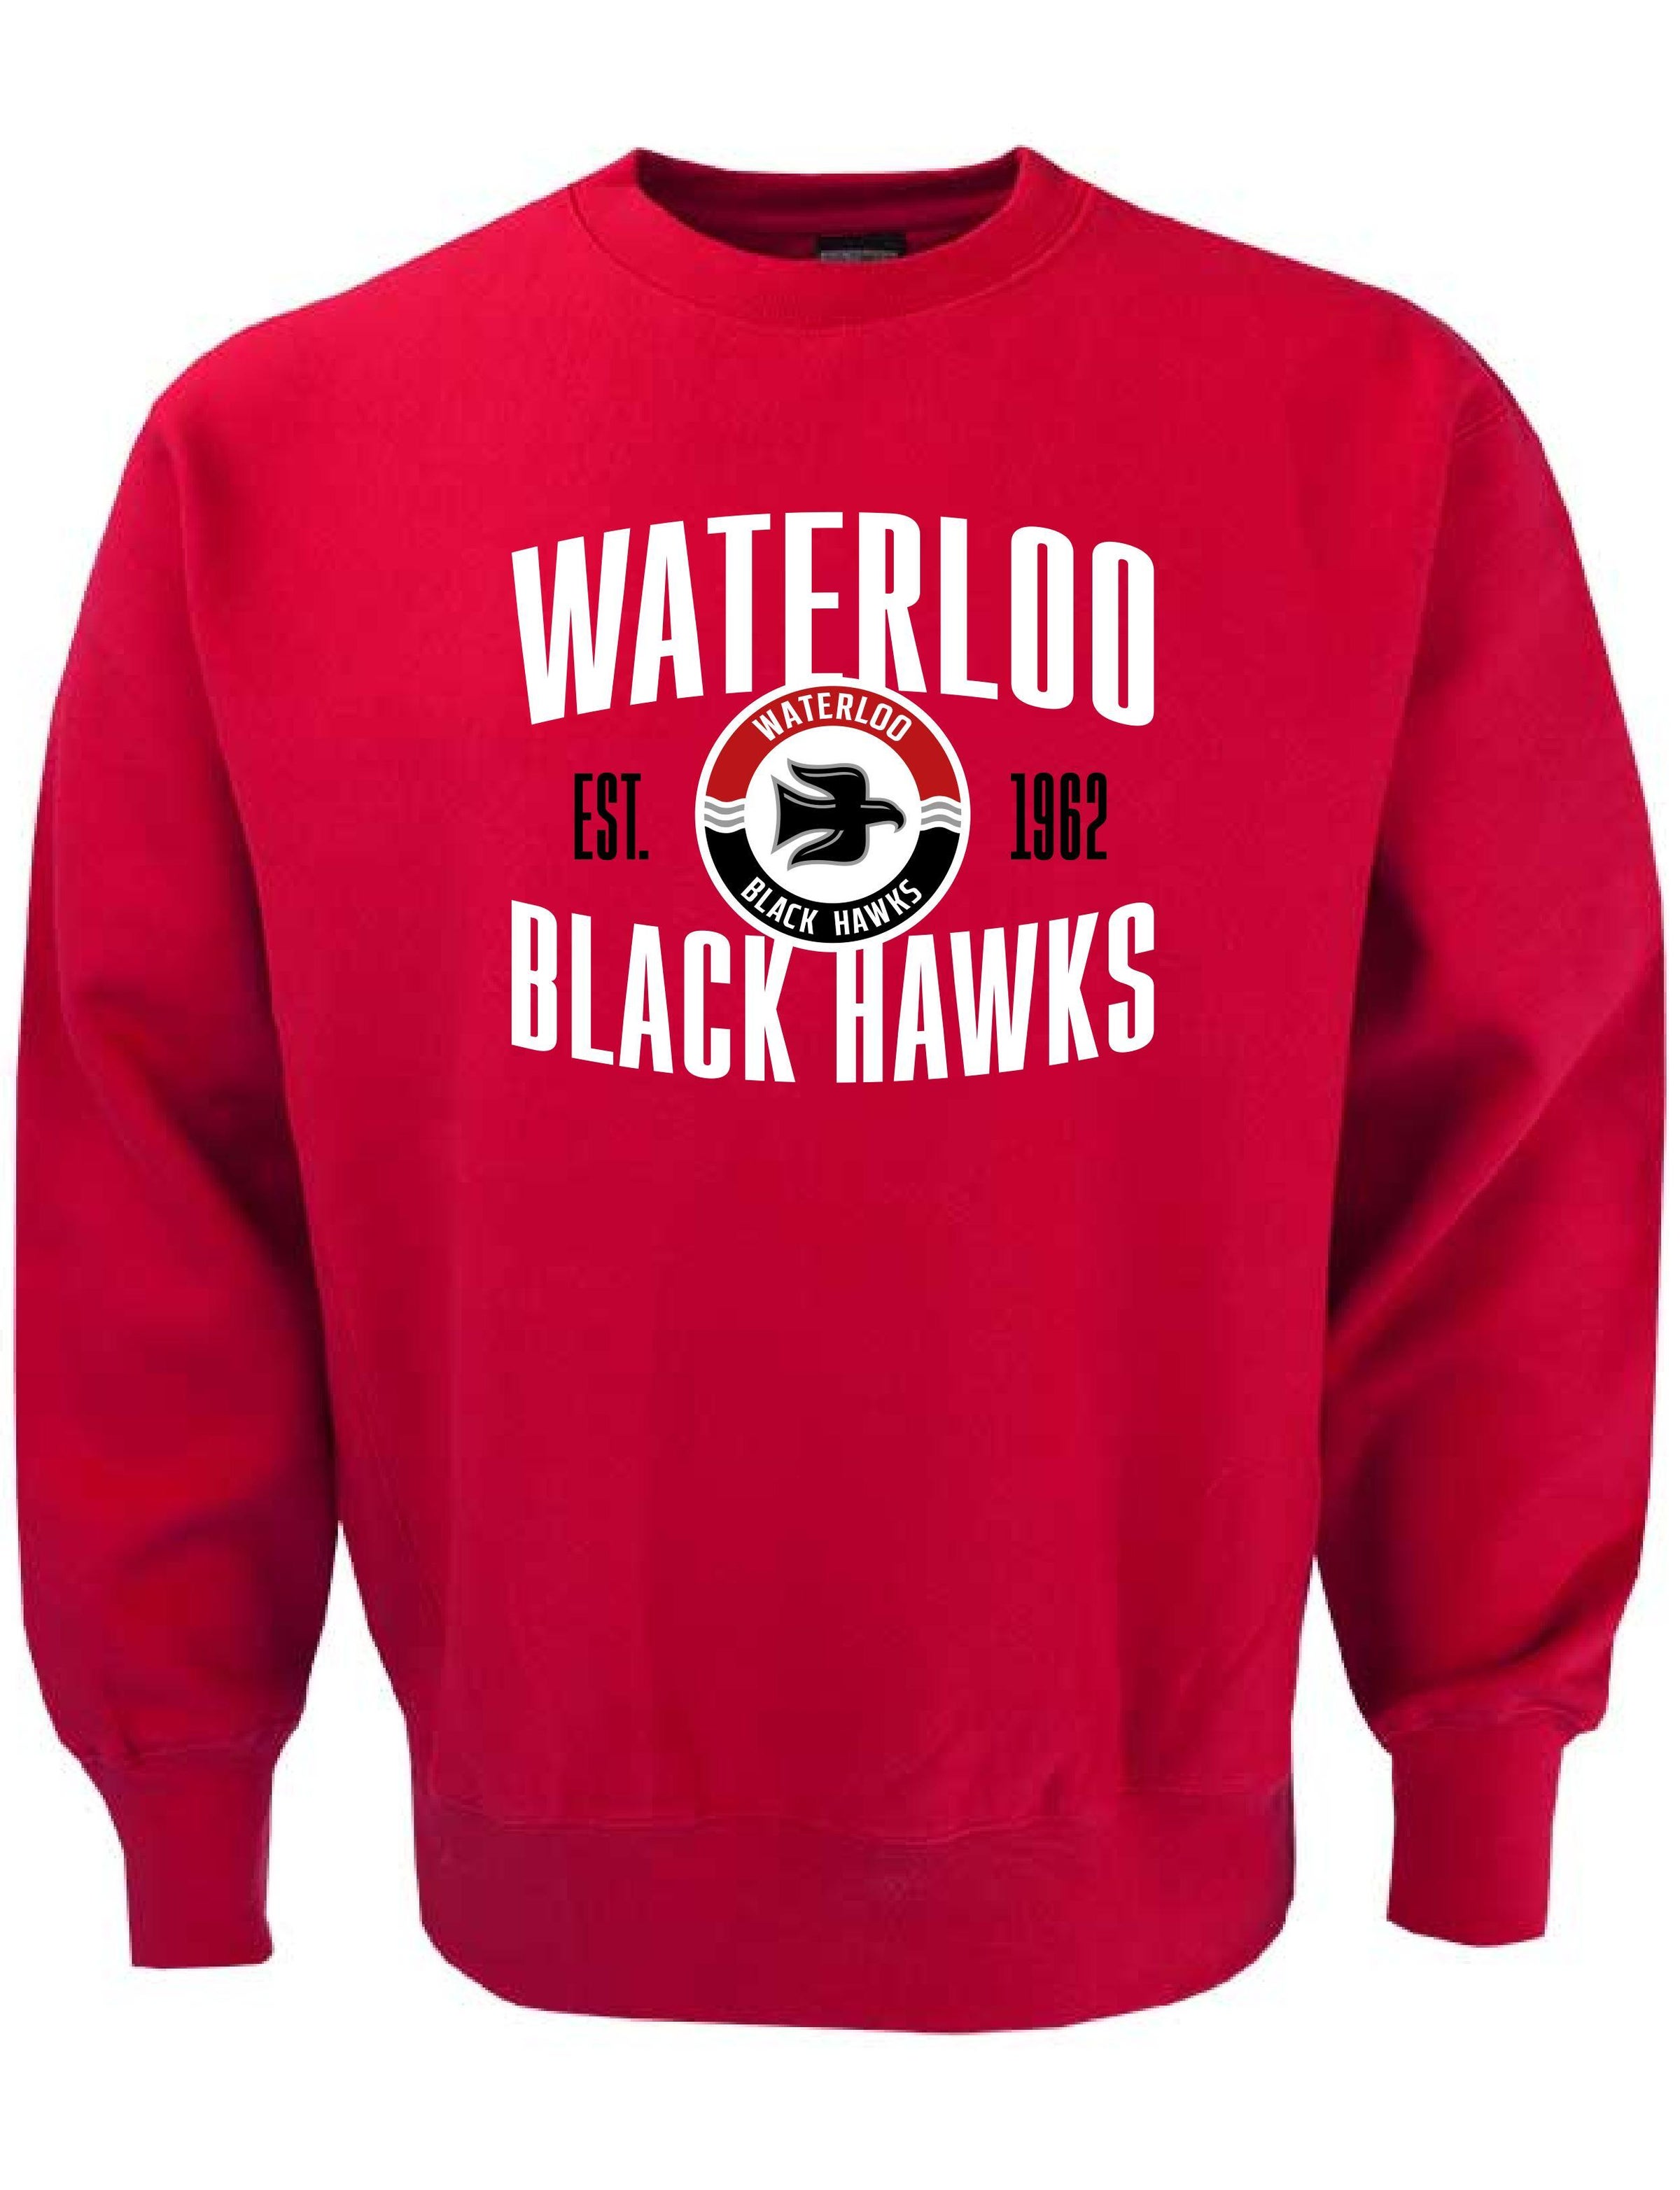 Waterloo Black Hawks Run with Deere Jerseys